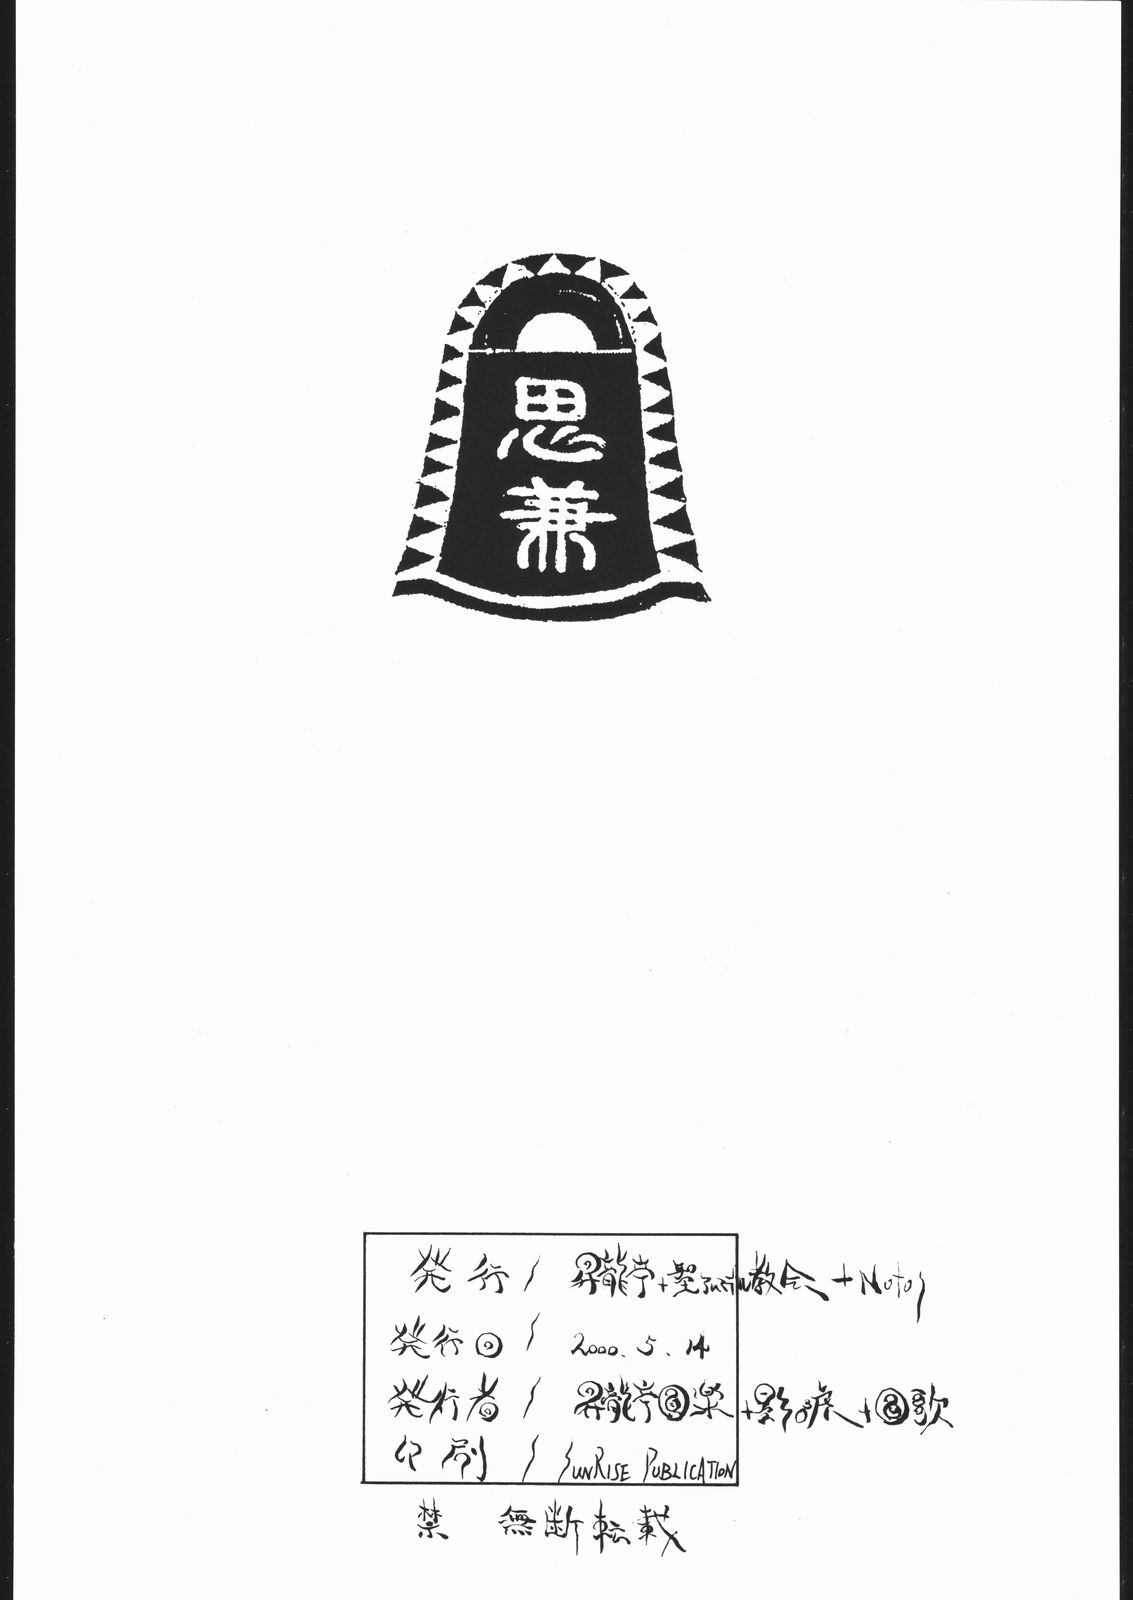 [昇龍亭&聖アルマデル教会&Notos] MOBILE BATTLESHIP NADESICO ONLY RURI HOSHINO (機動戦艦ナデシコ)